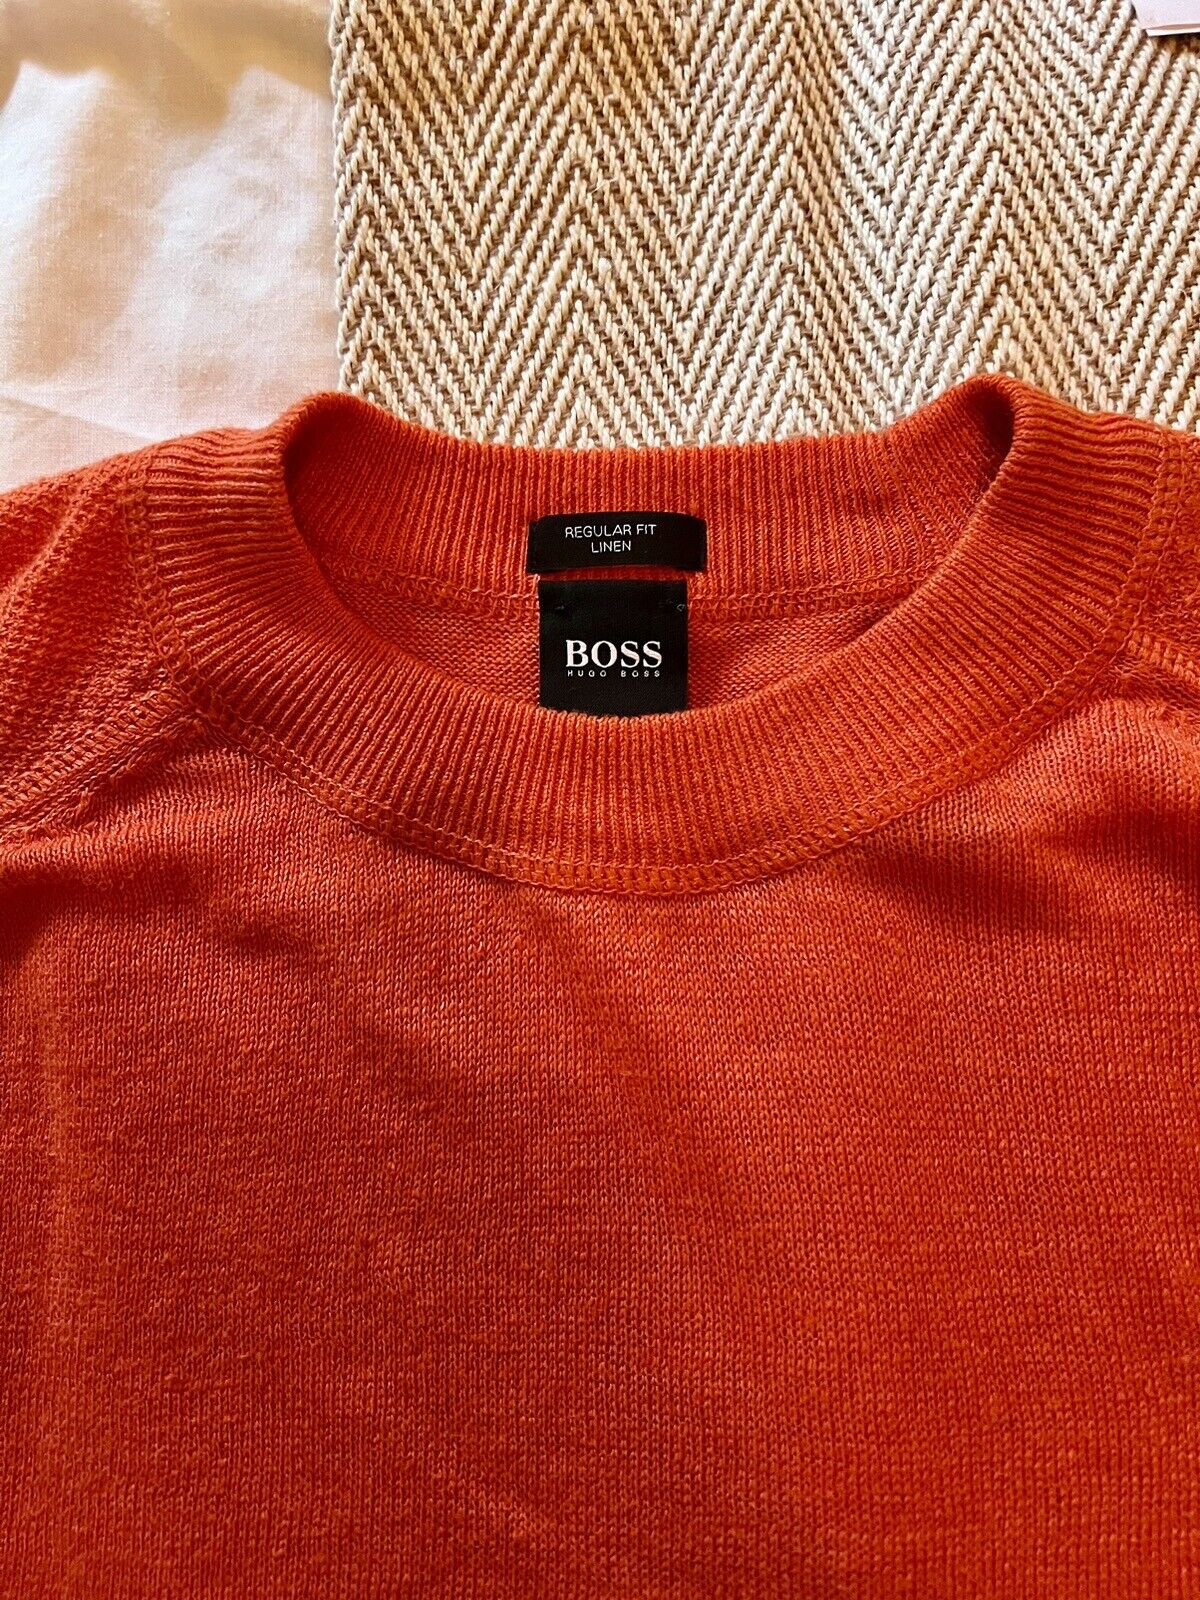 Hugo Boss Linen T Shirt Medium | eBay